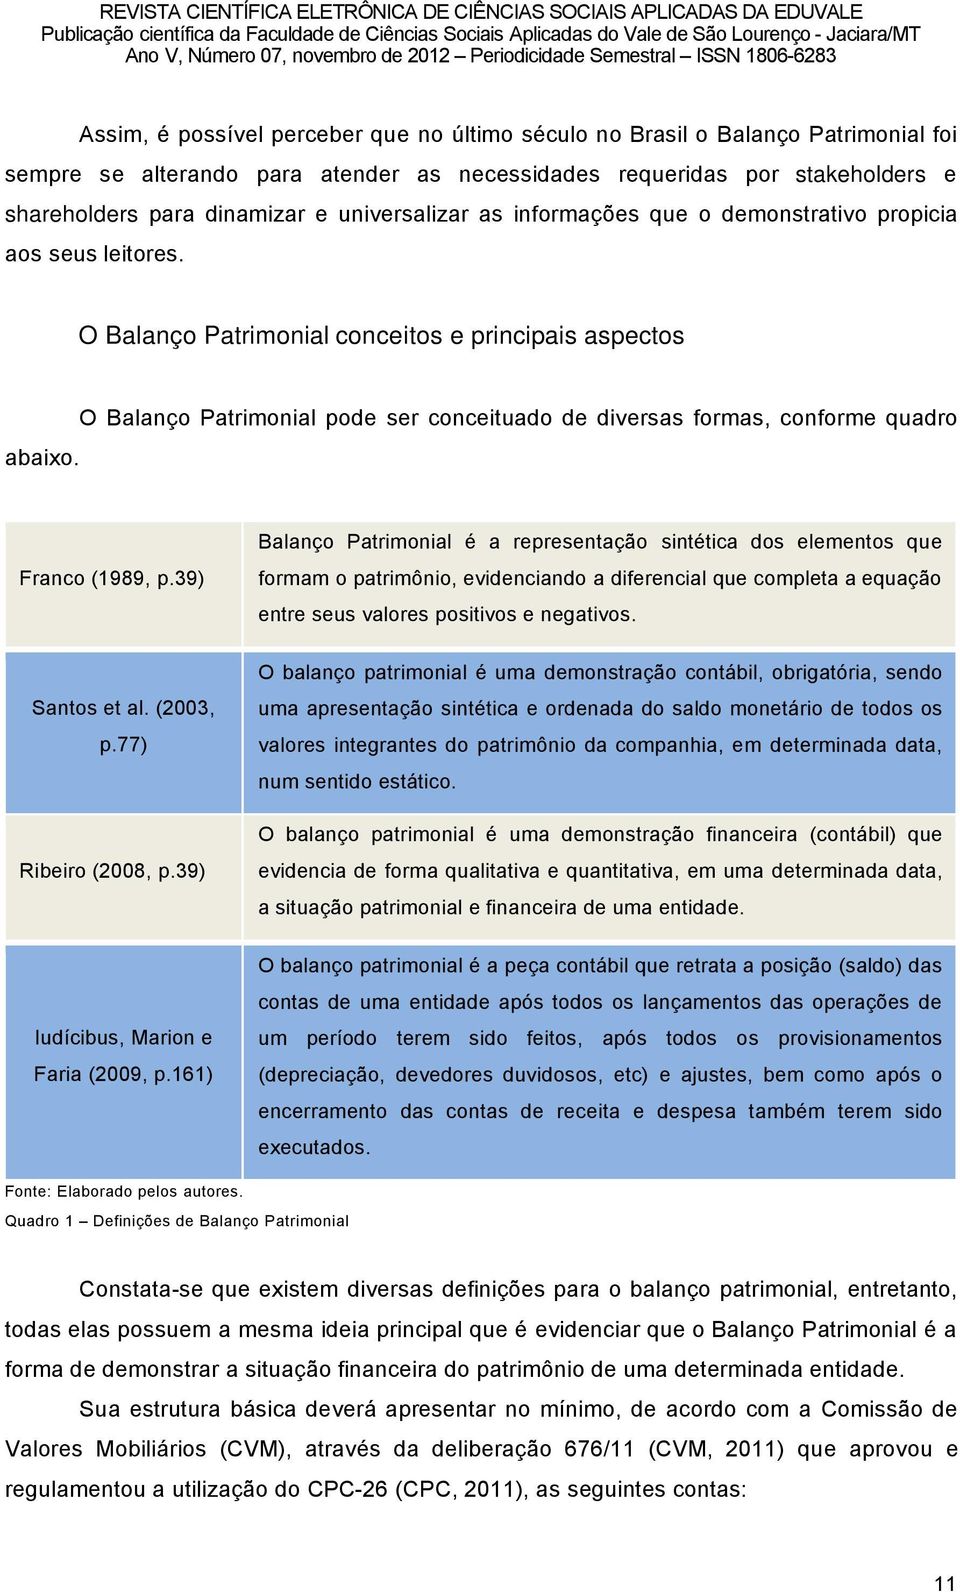 O BalanÉo Patrimonial pode ser conceituado de diversas formas, conforme quadro Franco (1989, p.